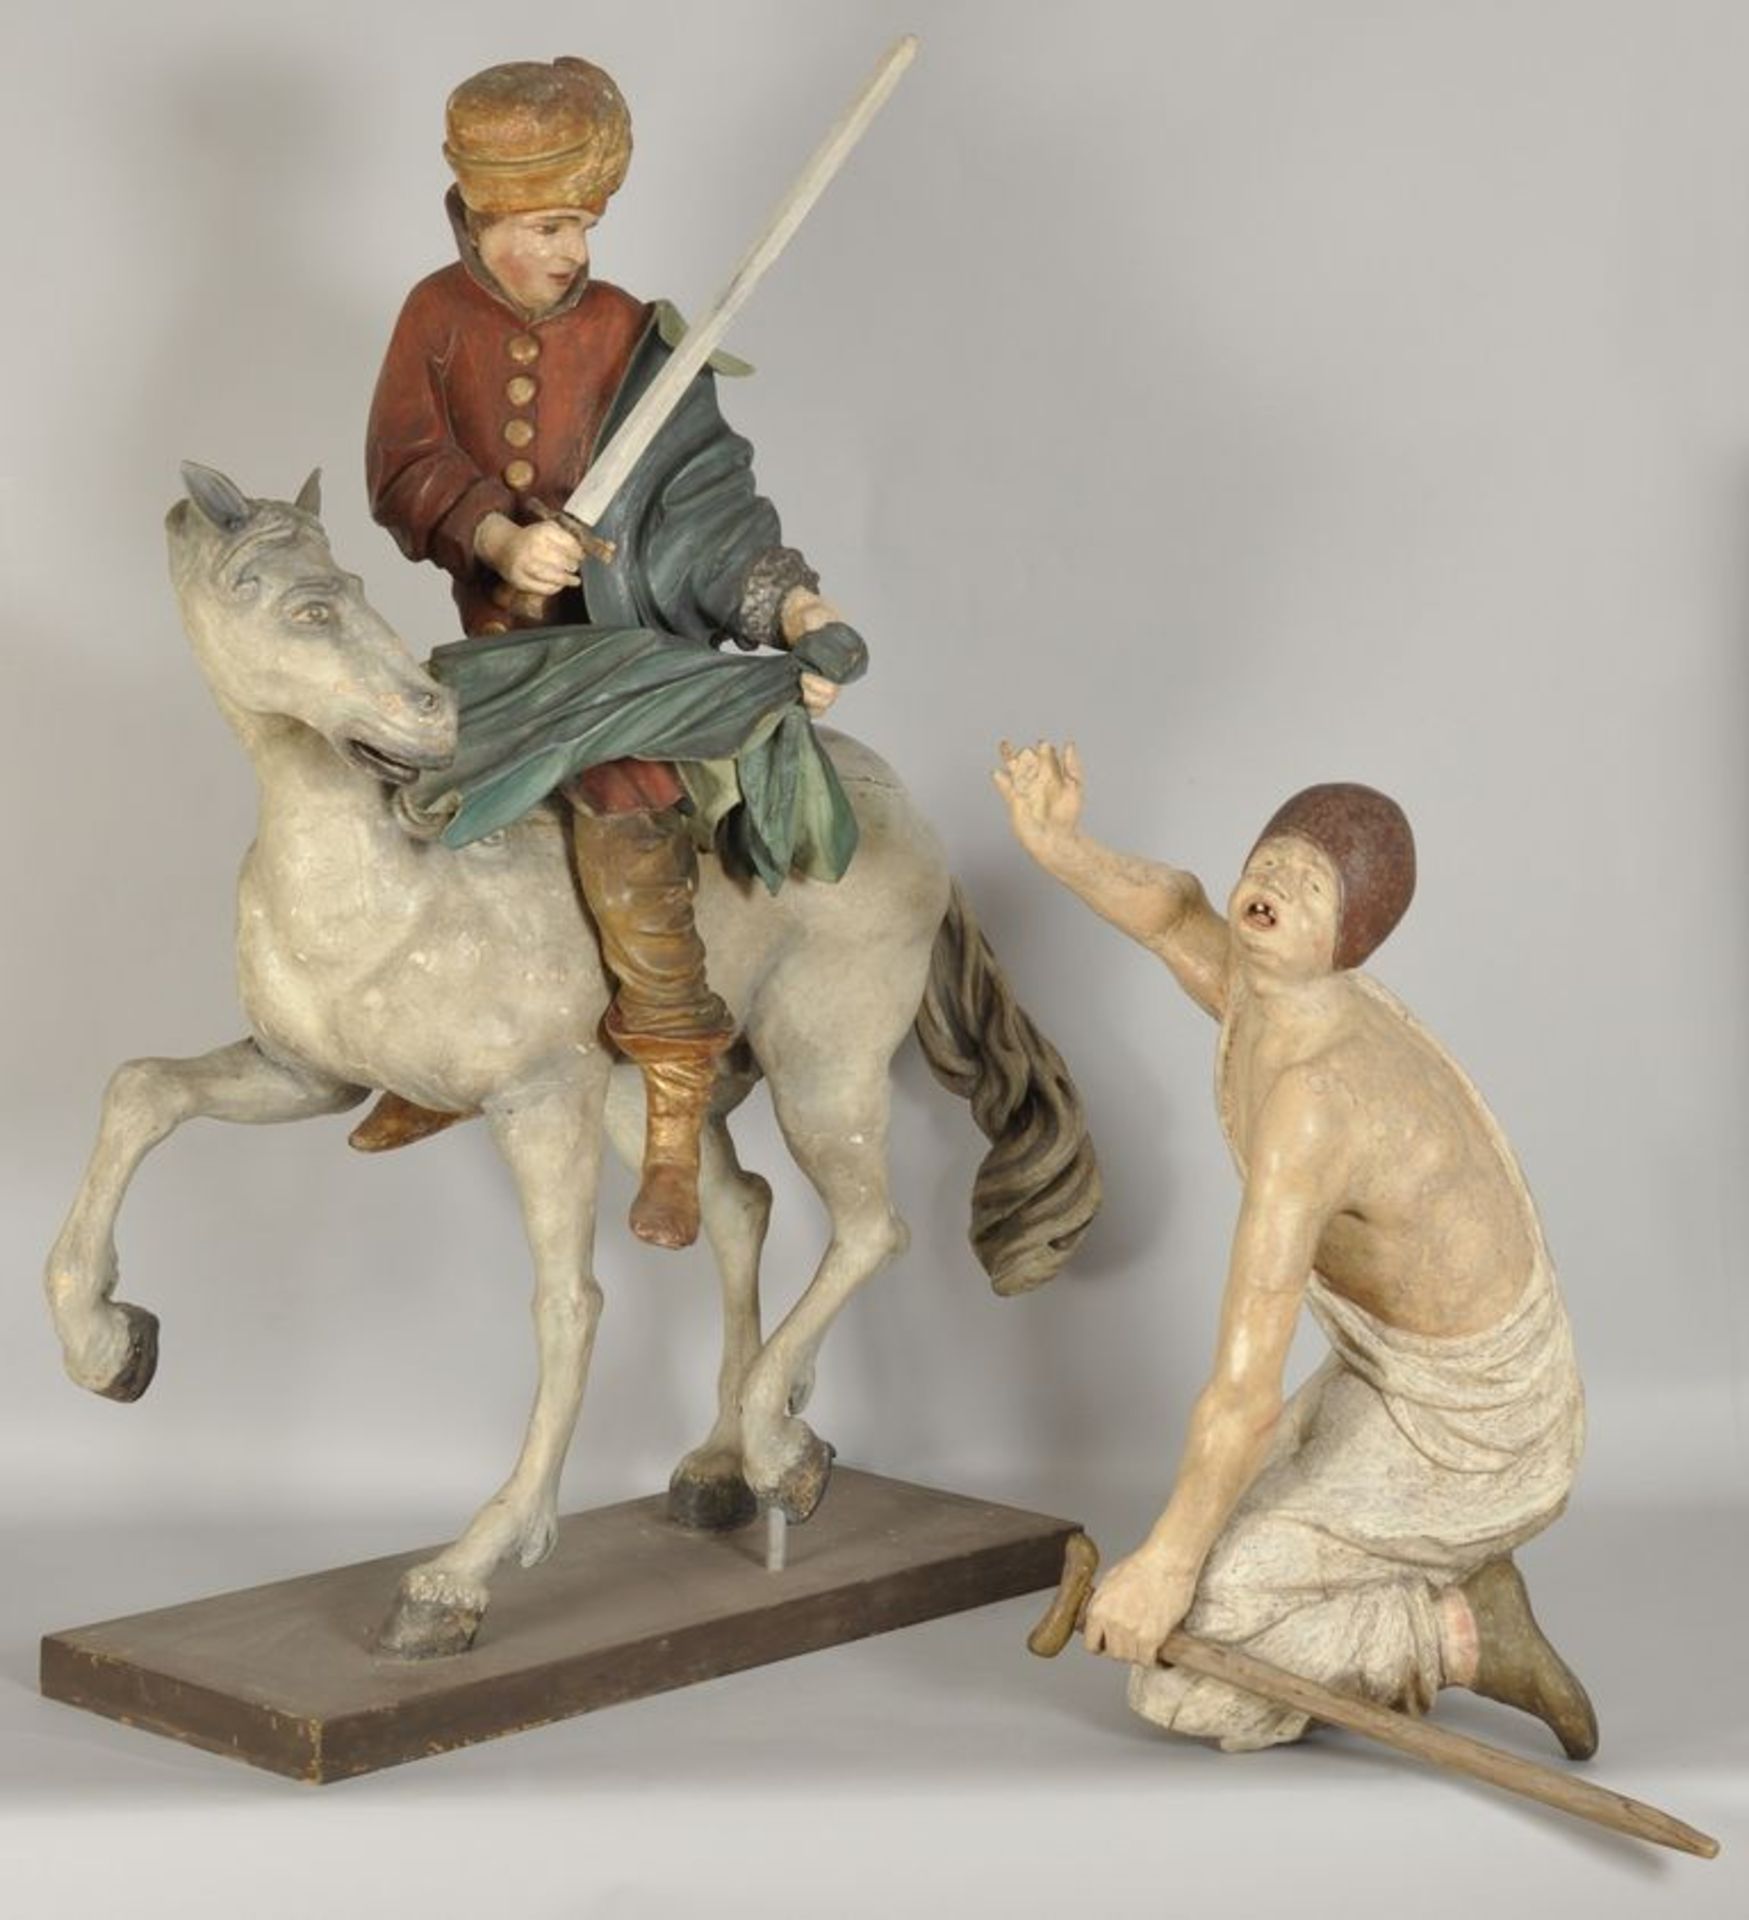 Figurengruppe Heiliger Martin mit Bettler,Österreich oder Tirol, 17. Jh. Laubholz, vollplastisch